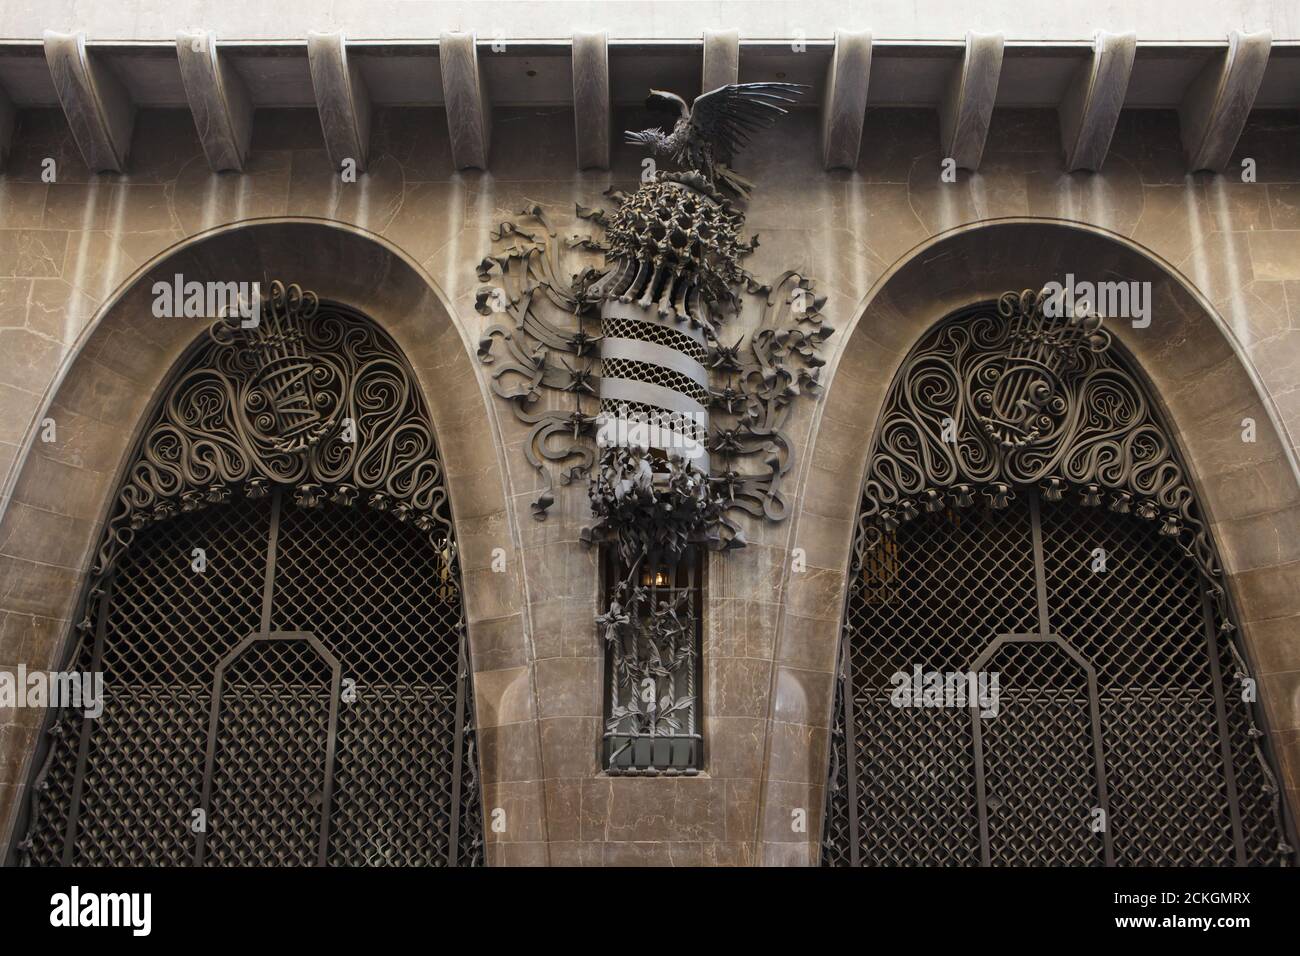 Das schmiedeeiserne Wappen Kataloniens ist am Haupttor des Palau Güell abgebildet, der vom katalanischen modernistischen Architekten Antoni Gaudí in Barcelona, Katalonien, Spanien entworfen wurde. Das Herrenhaus im Auftrag des katalanischen Industriemagnaten Eusebi Güell wurde zwischen 1886 und 1890 erbaut. Die geschmiedeten Eisenmonogramme E und G werden an den Besitzer des Herrenhauses verwiesen. Stockfoto